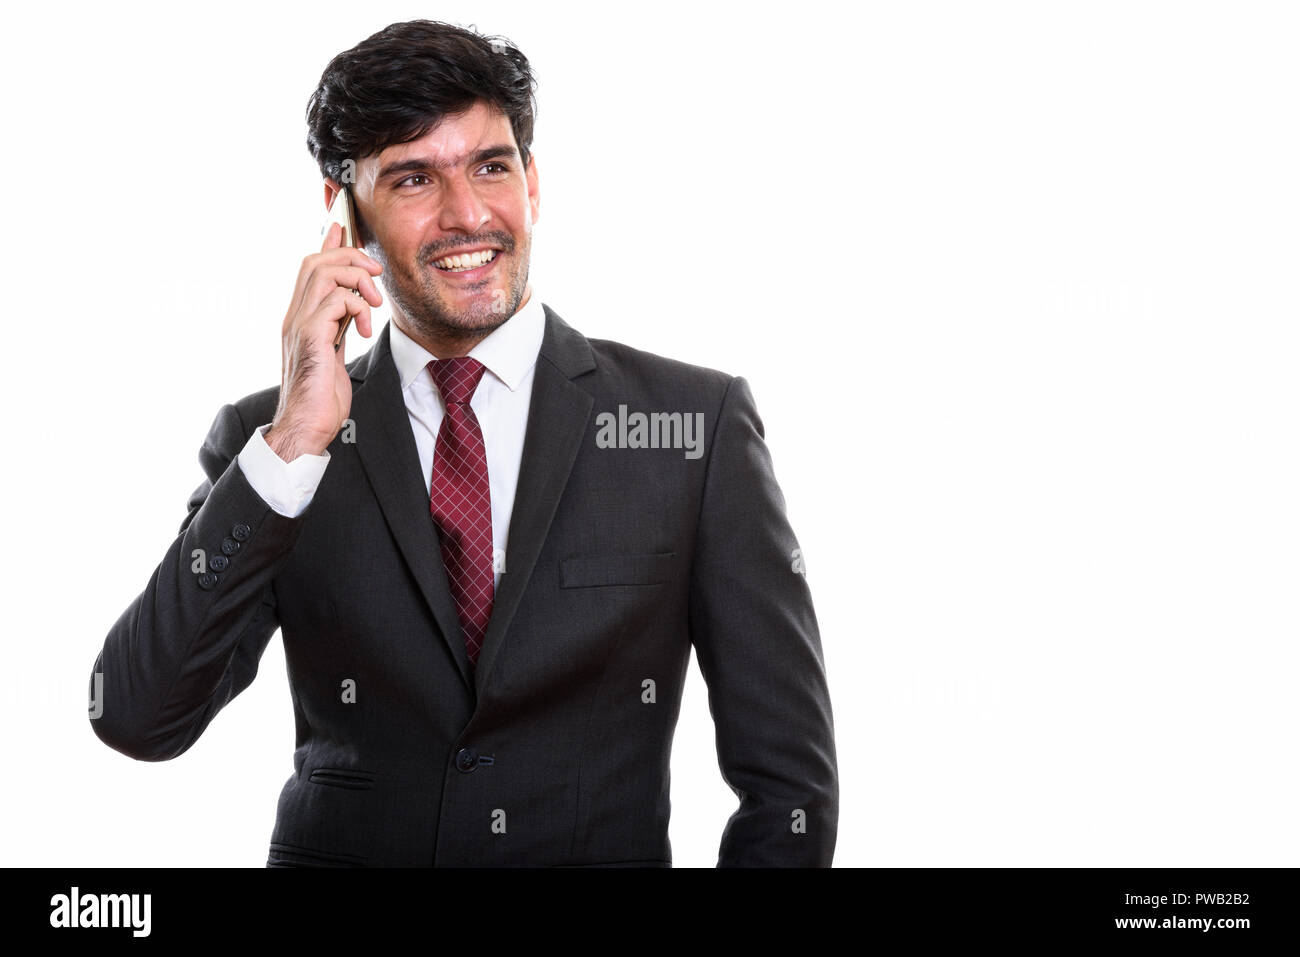 Les jeunes professionnels Persian businessman smiling while talking on mobile Banque D'Images